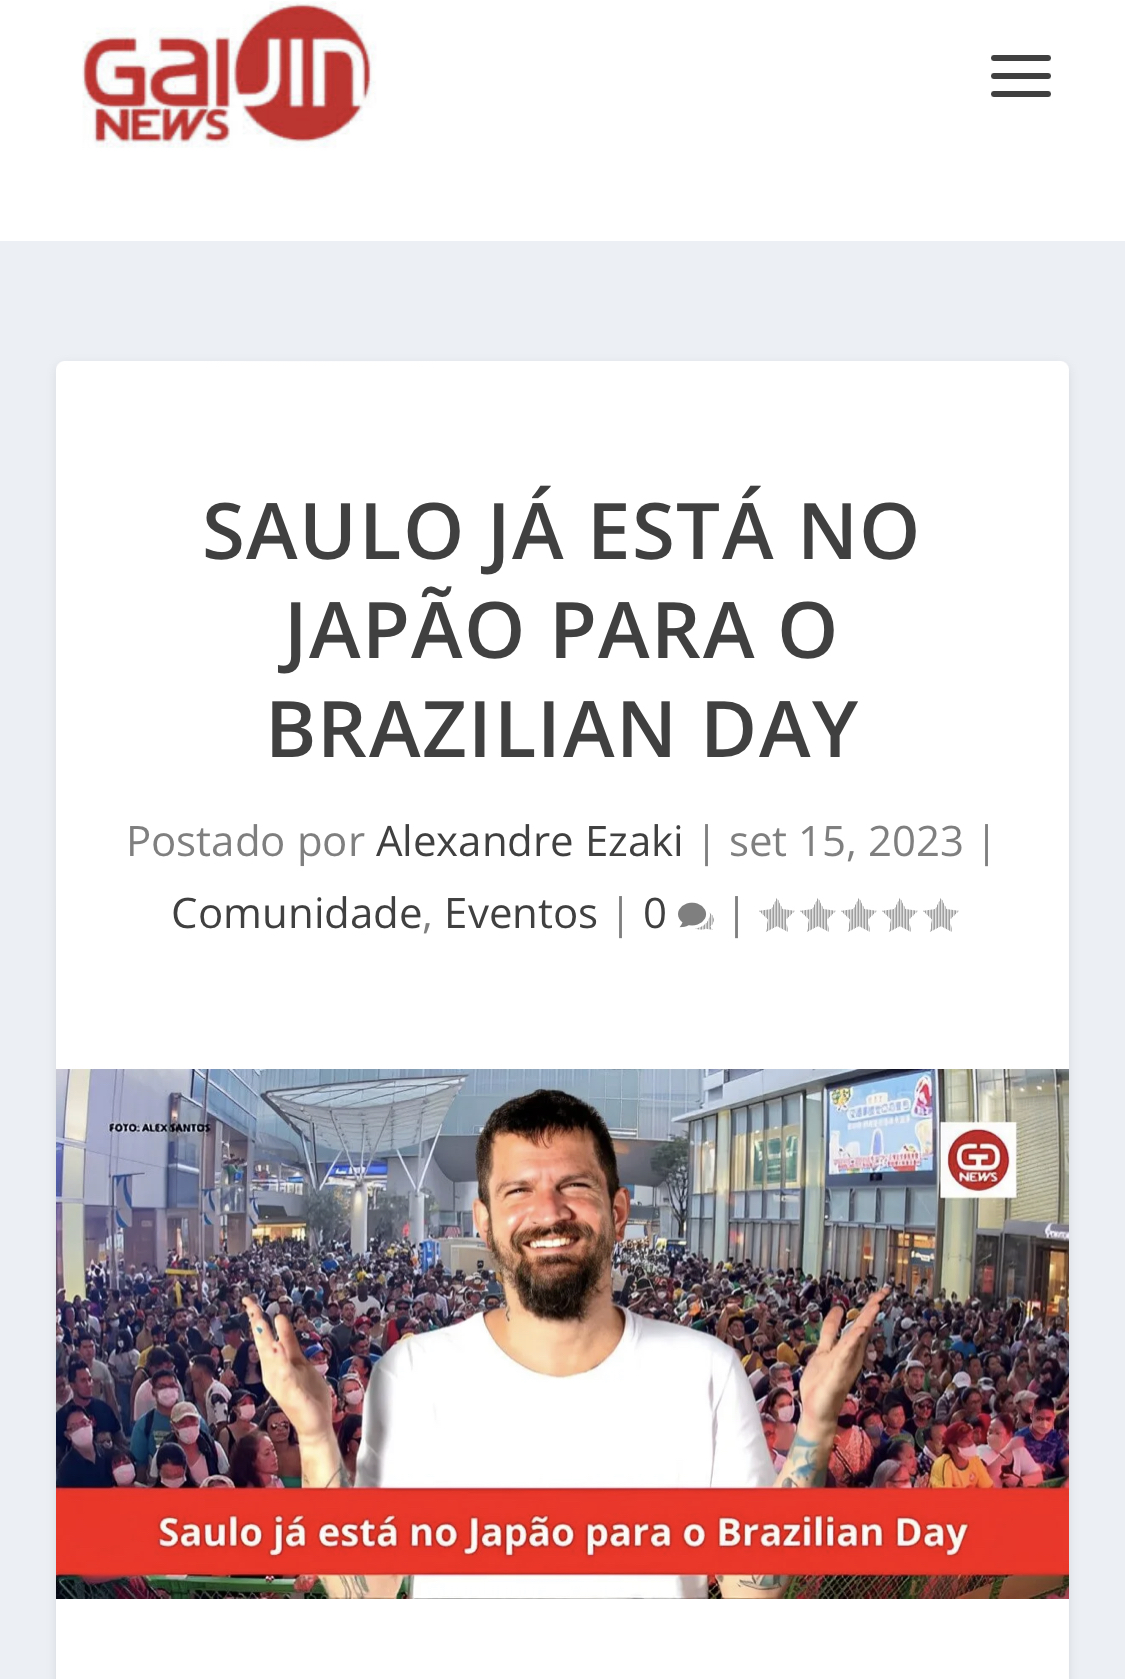 gaijin news - SAULO JÁ ESTÁ NO JAPÃO PARA O BRAZILIAN DAY